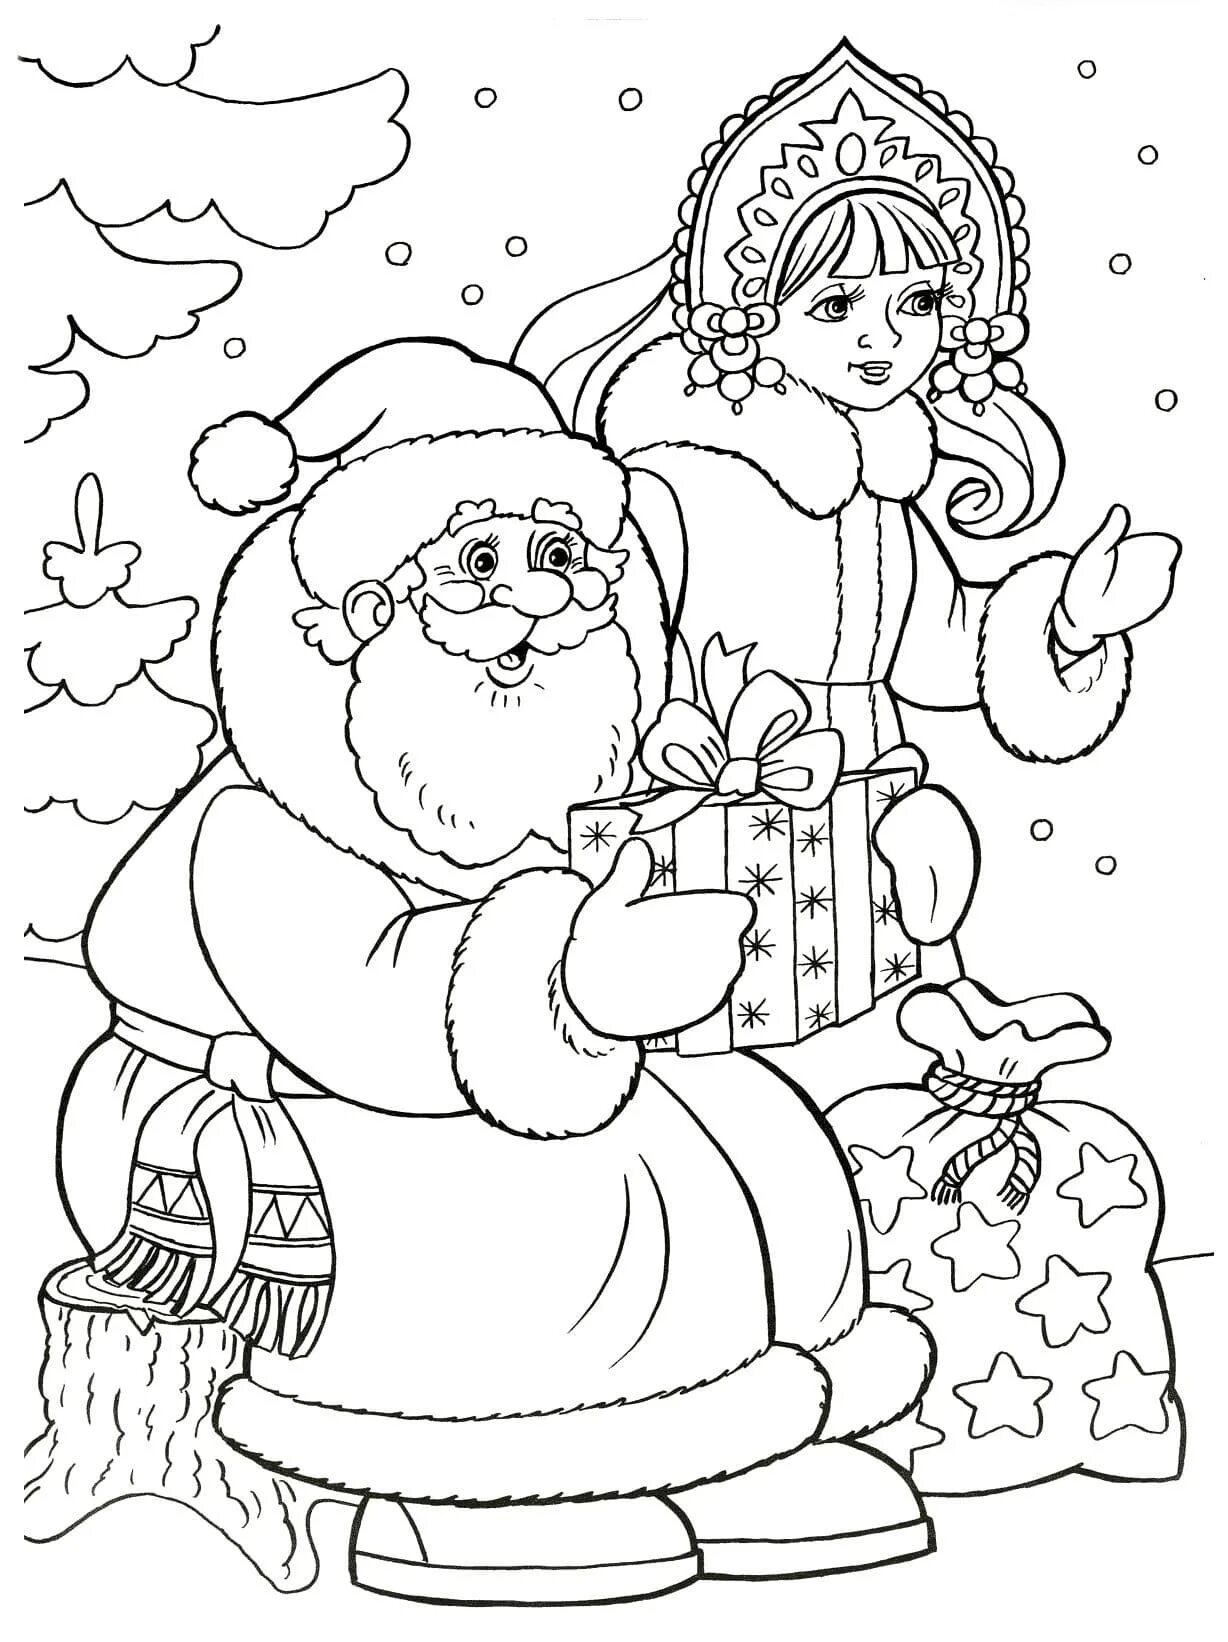 Новый год распечатанная. Новогодняя раскраска. Дед Мороз и Снегурочка раскраска. Раскраска Деда Мороза и Снегурочки. Раскраска "Снегурочка".